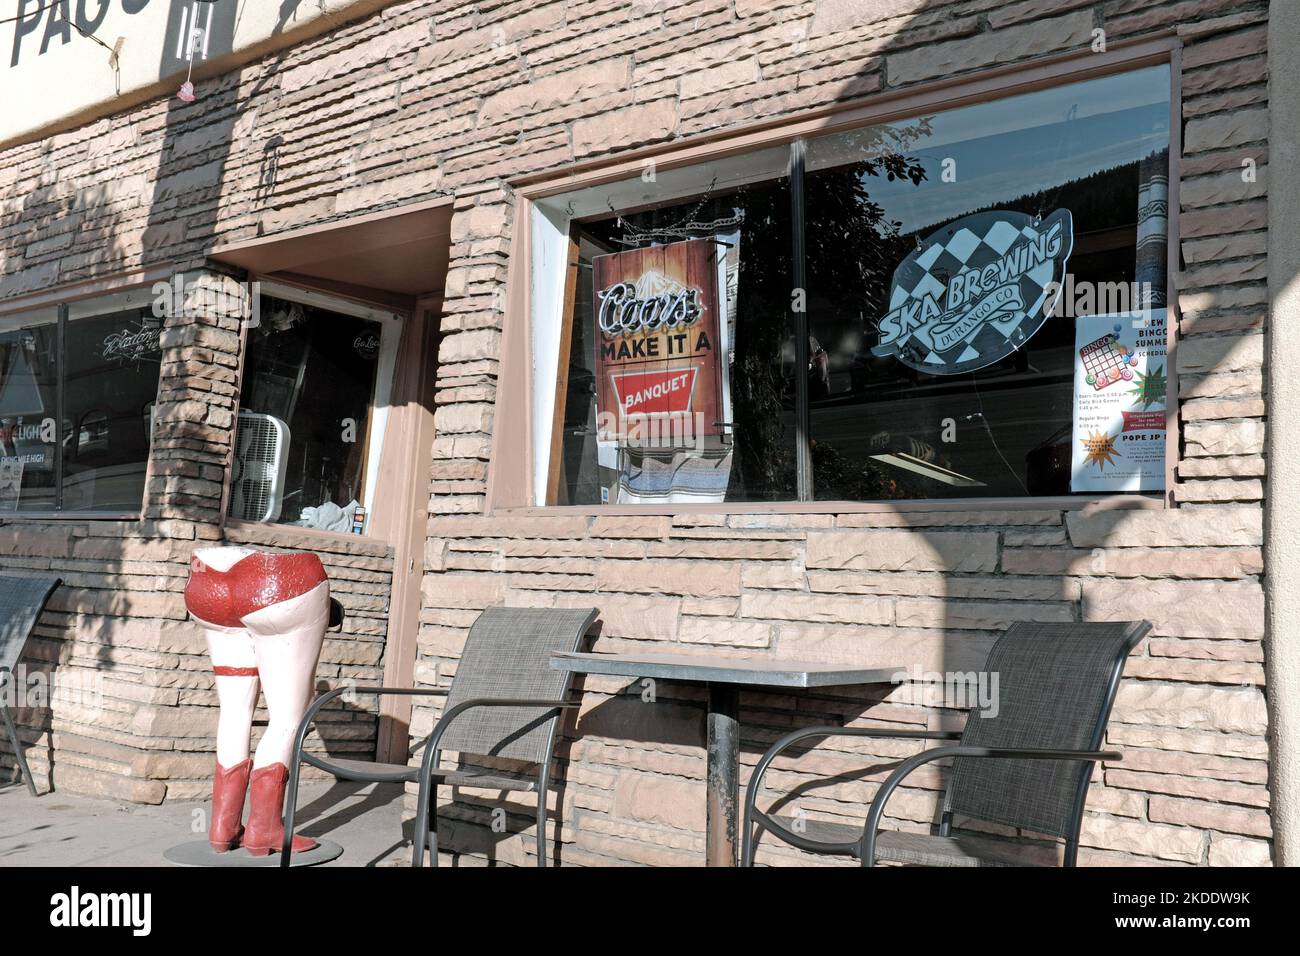 Le bar Pagosa, situé dans la rue principale du centre-ville de Pagosa Springs, Colorado, est un ancien bar de l'Ouest. Banque D'Images